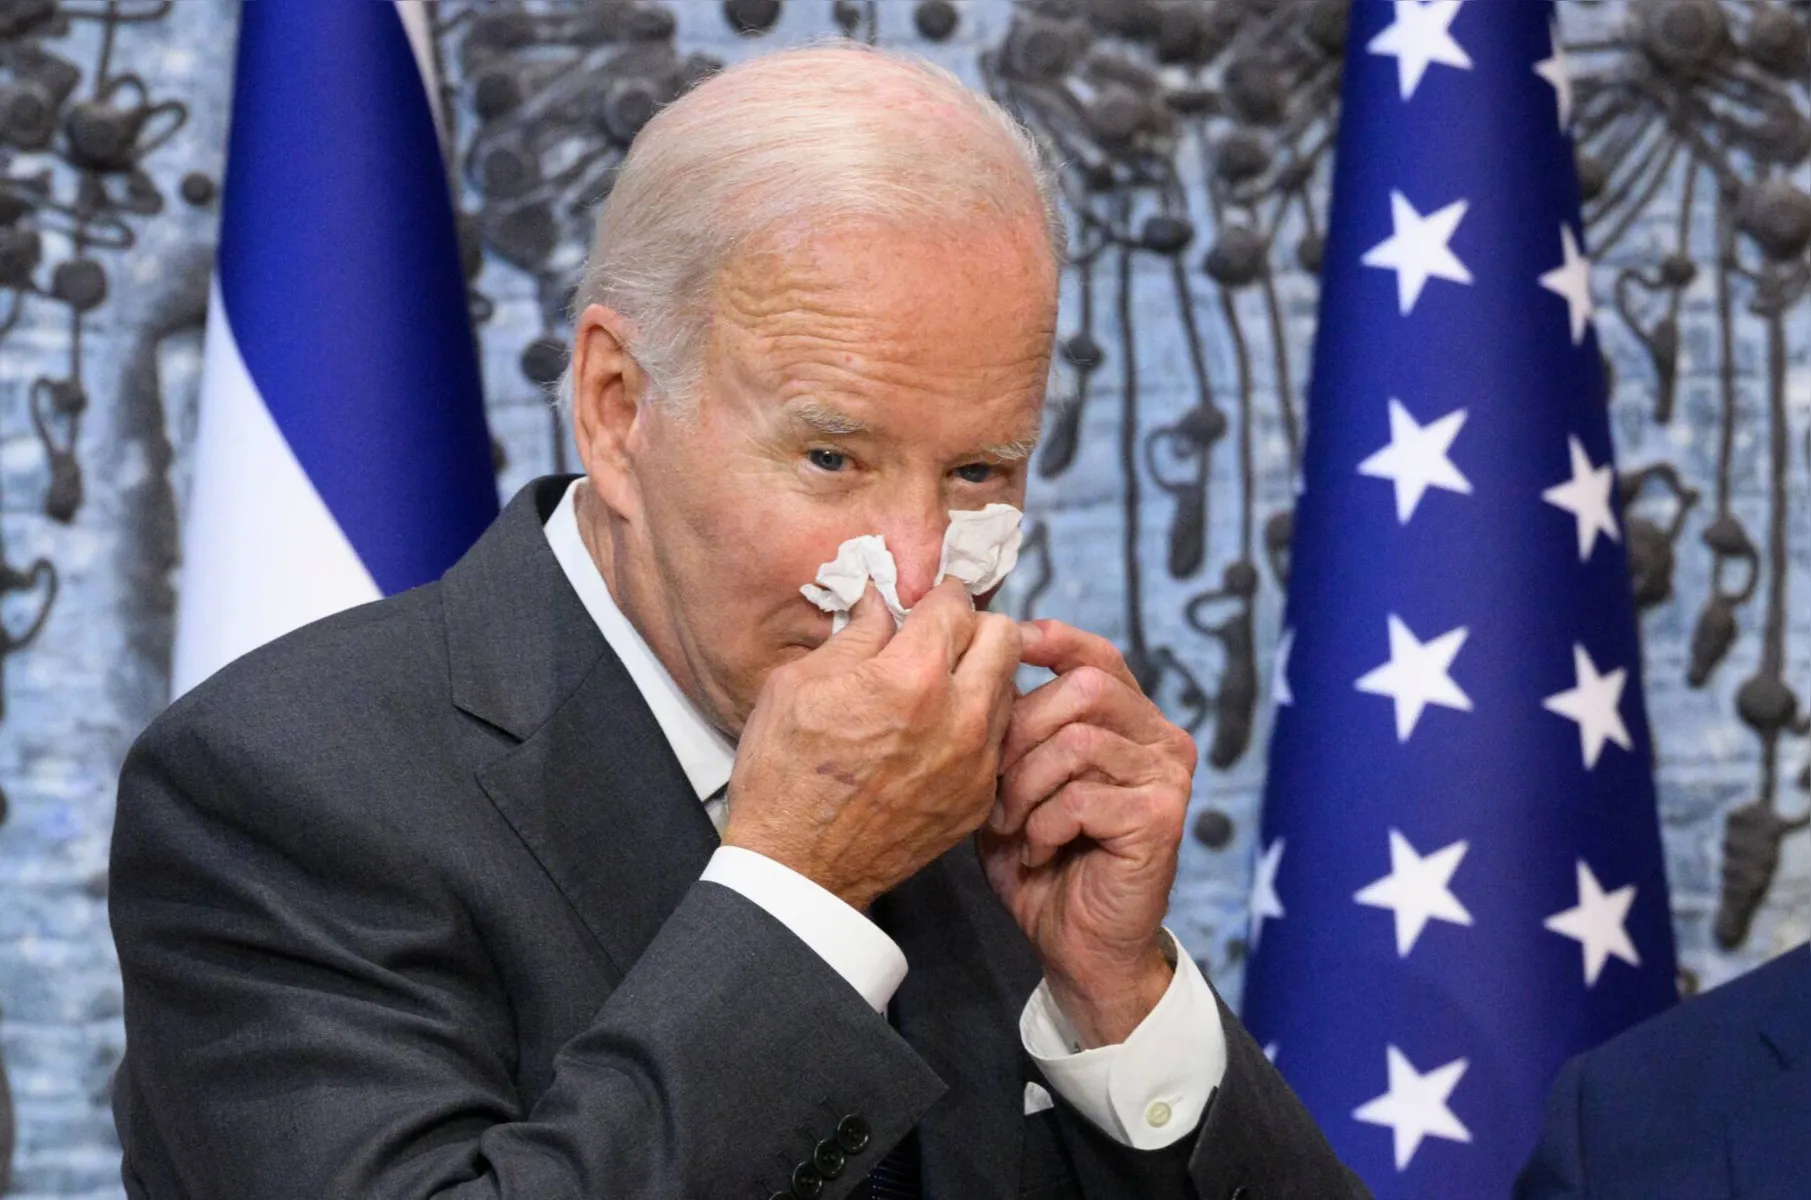 De acordo com a CNN americana, Biden teve sintomas como cansaço, tosse e nariz escorrendo, mas não chegou a ter febre